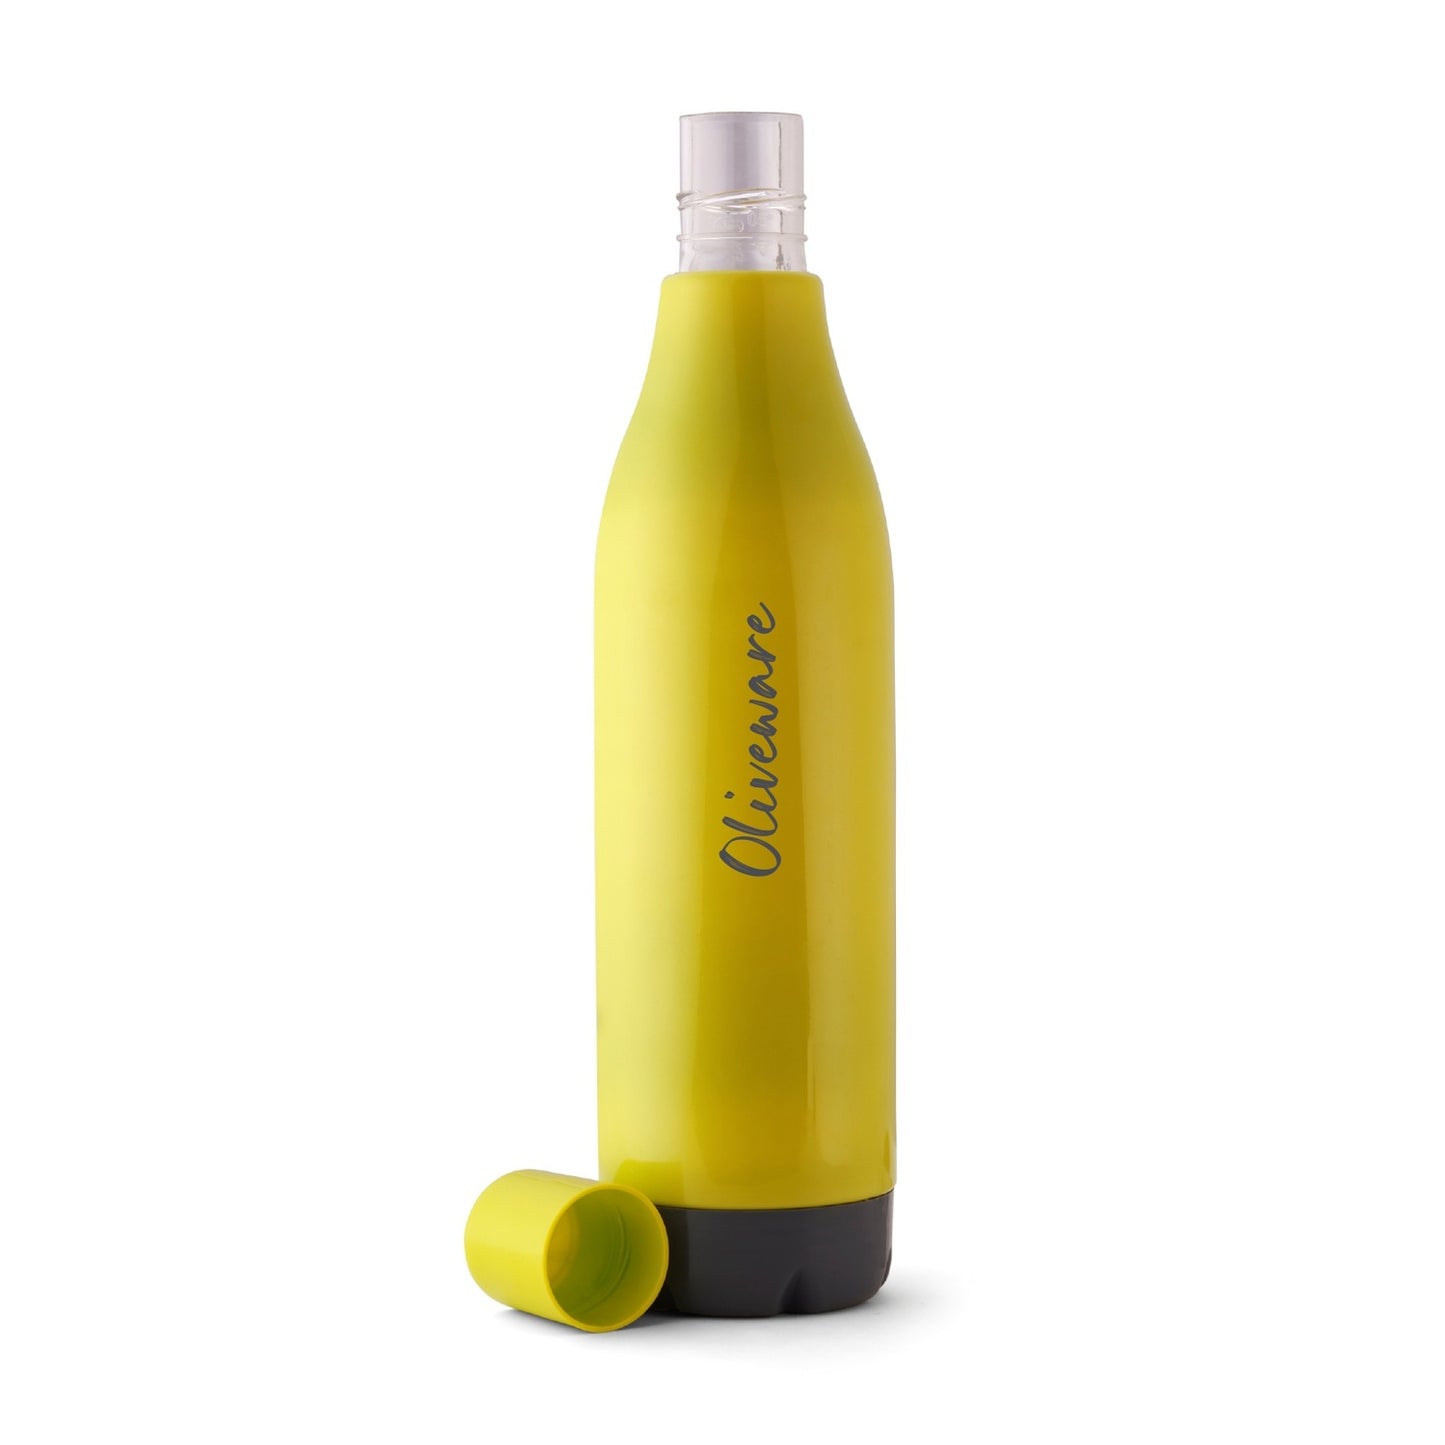 Rivo Water Bottle (1000 ML)